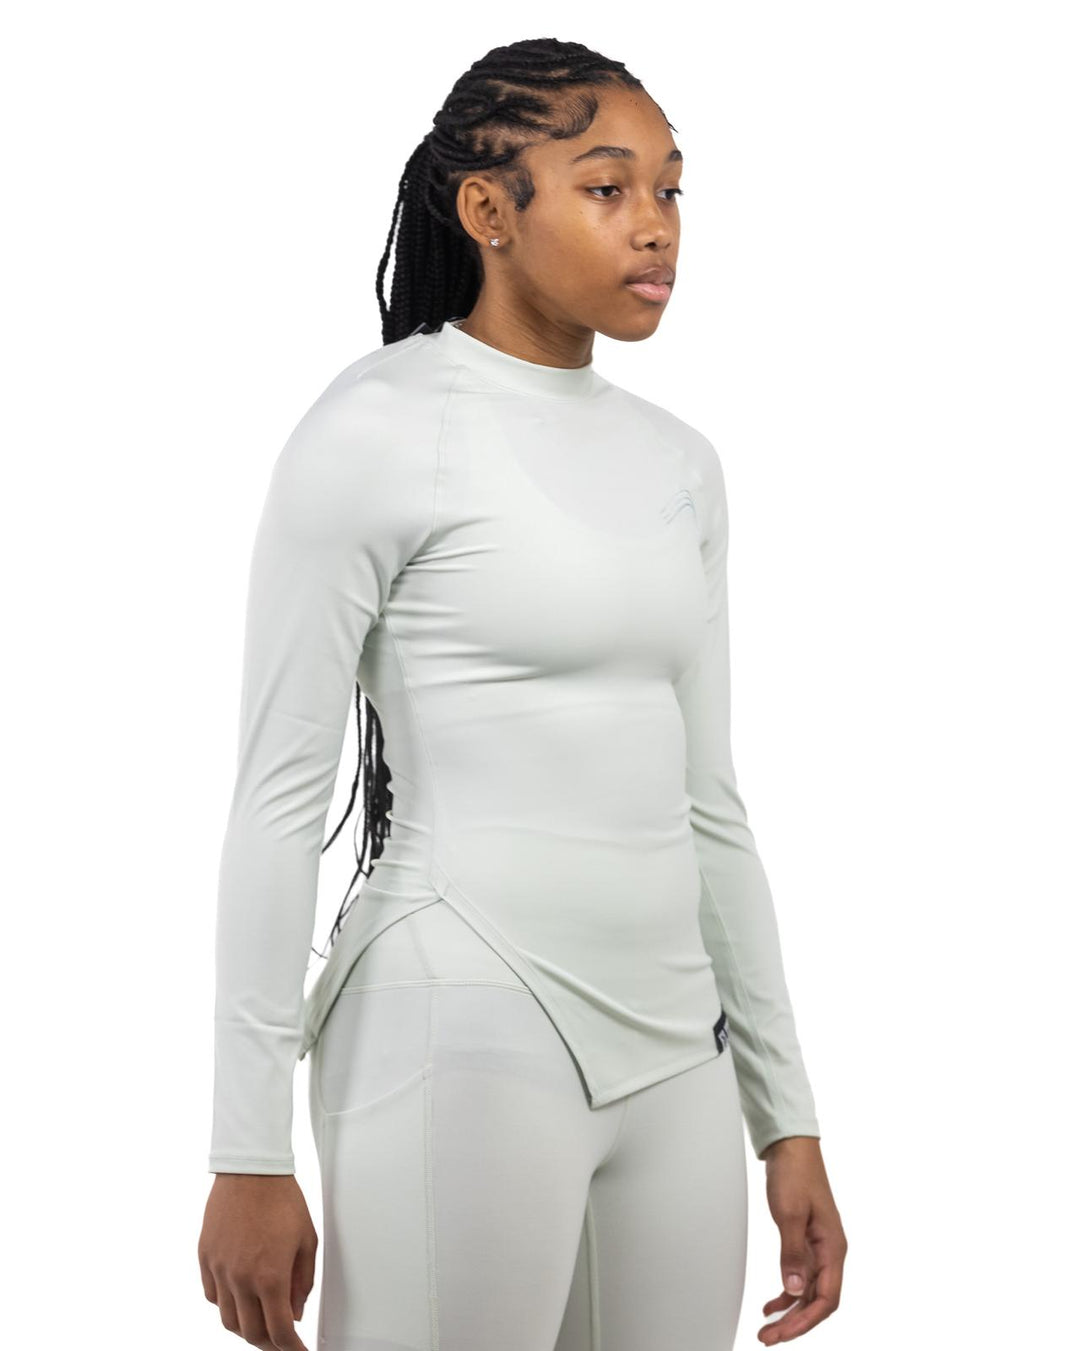 Women’s fitted runner shirt -  Sea Foam